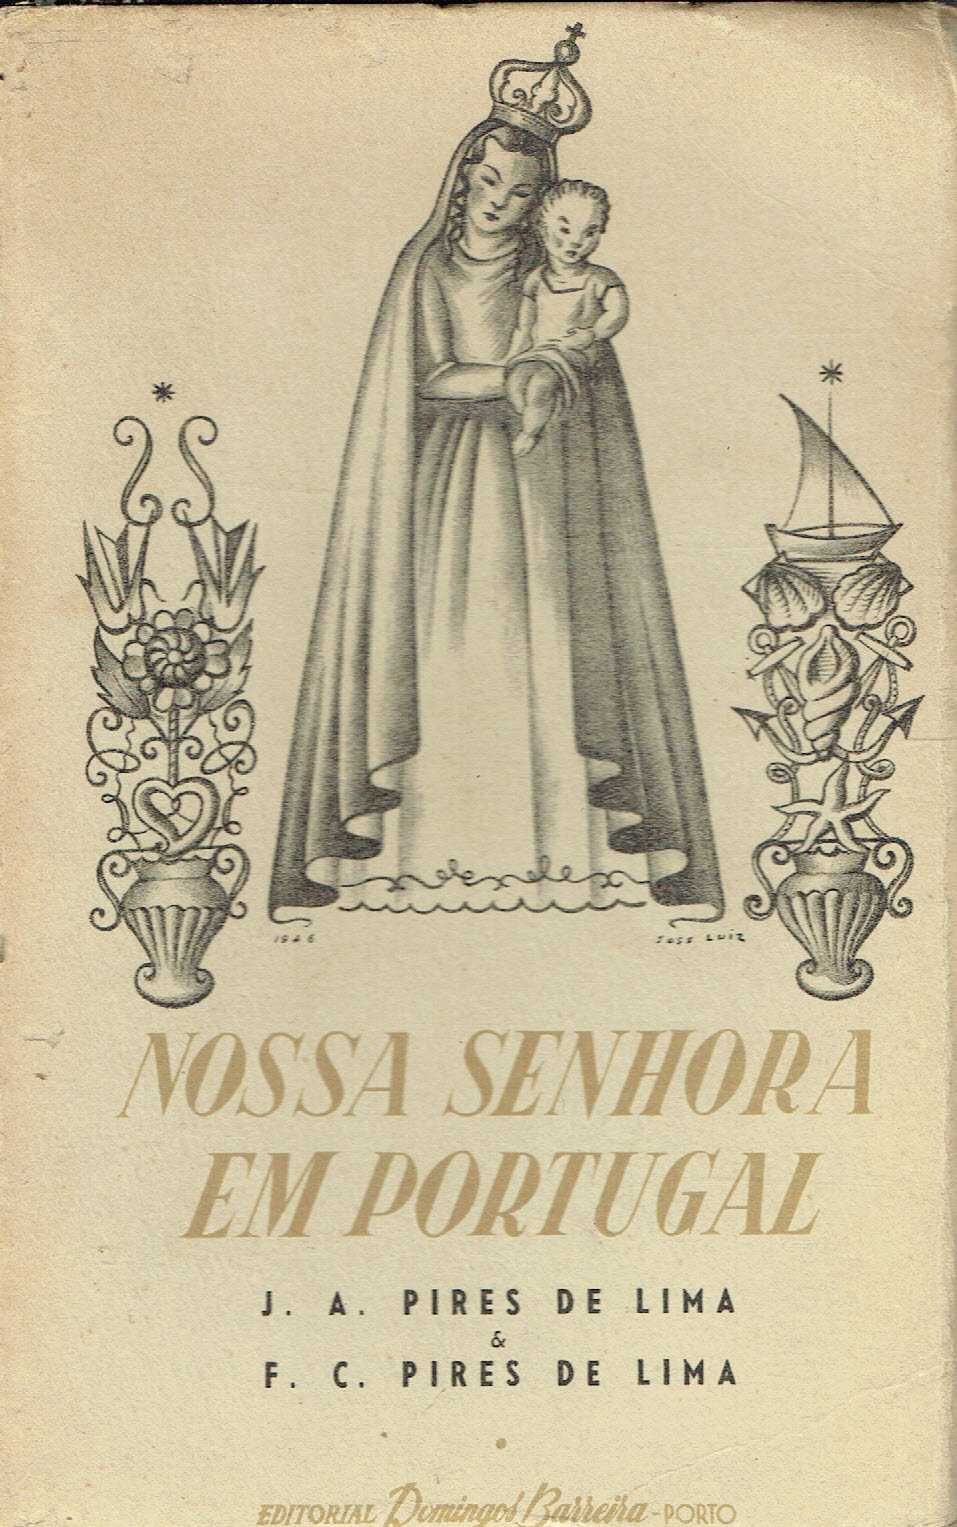 7499

Nossa Senhora em Portugal
de F. C. Pires de Lima